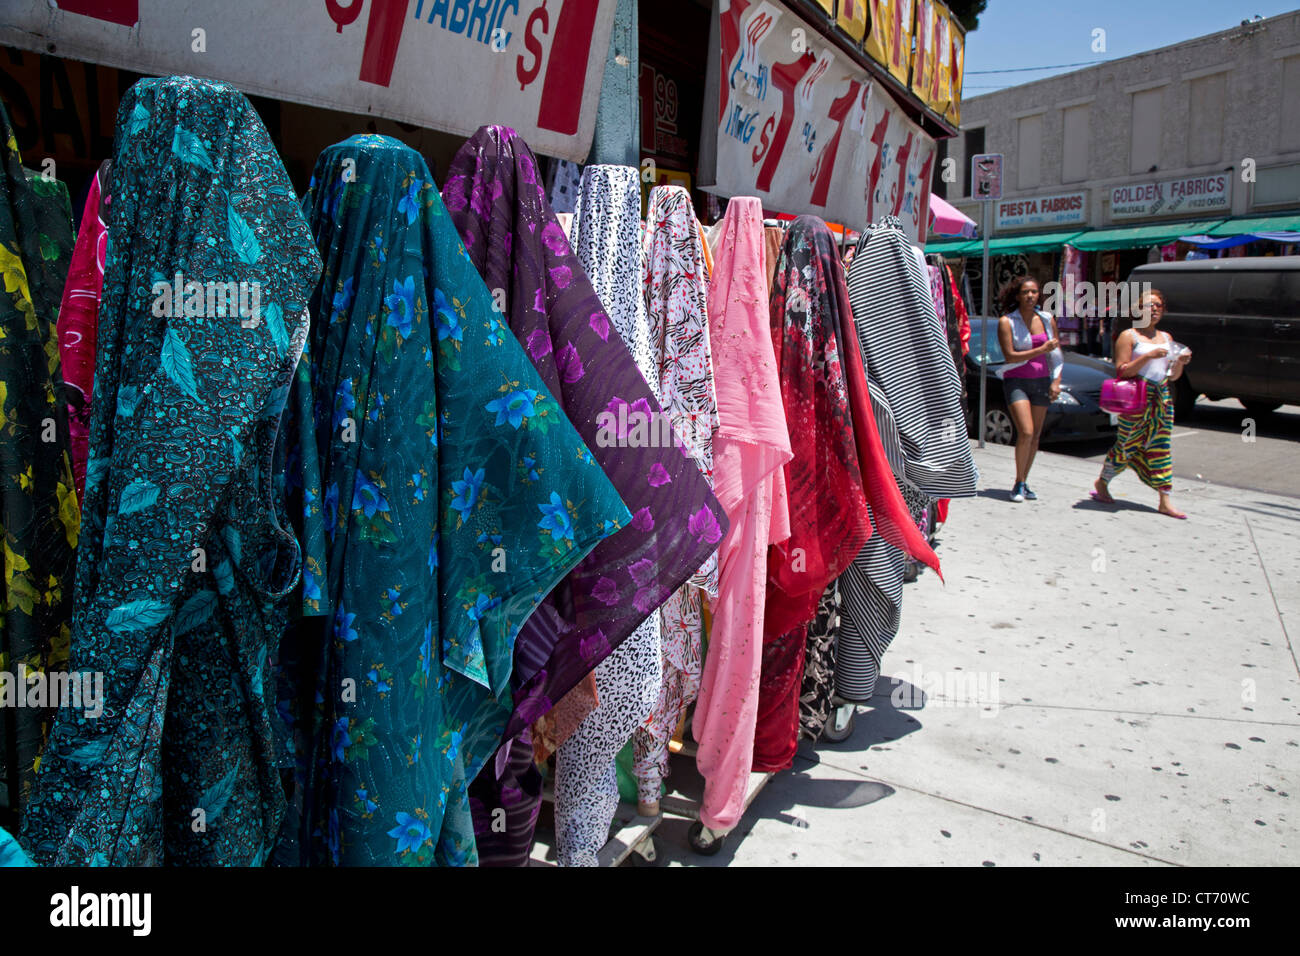 Los Angeles, Kalifornien - Kleidung und Stoff für den Verkauf auf dem Bürgersteig vor Geschäften in den Fashion District. Stockfoto